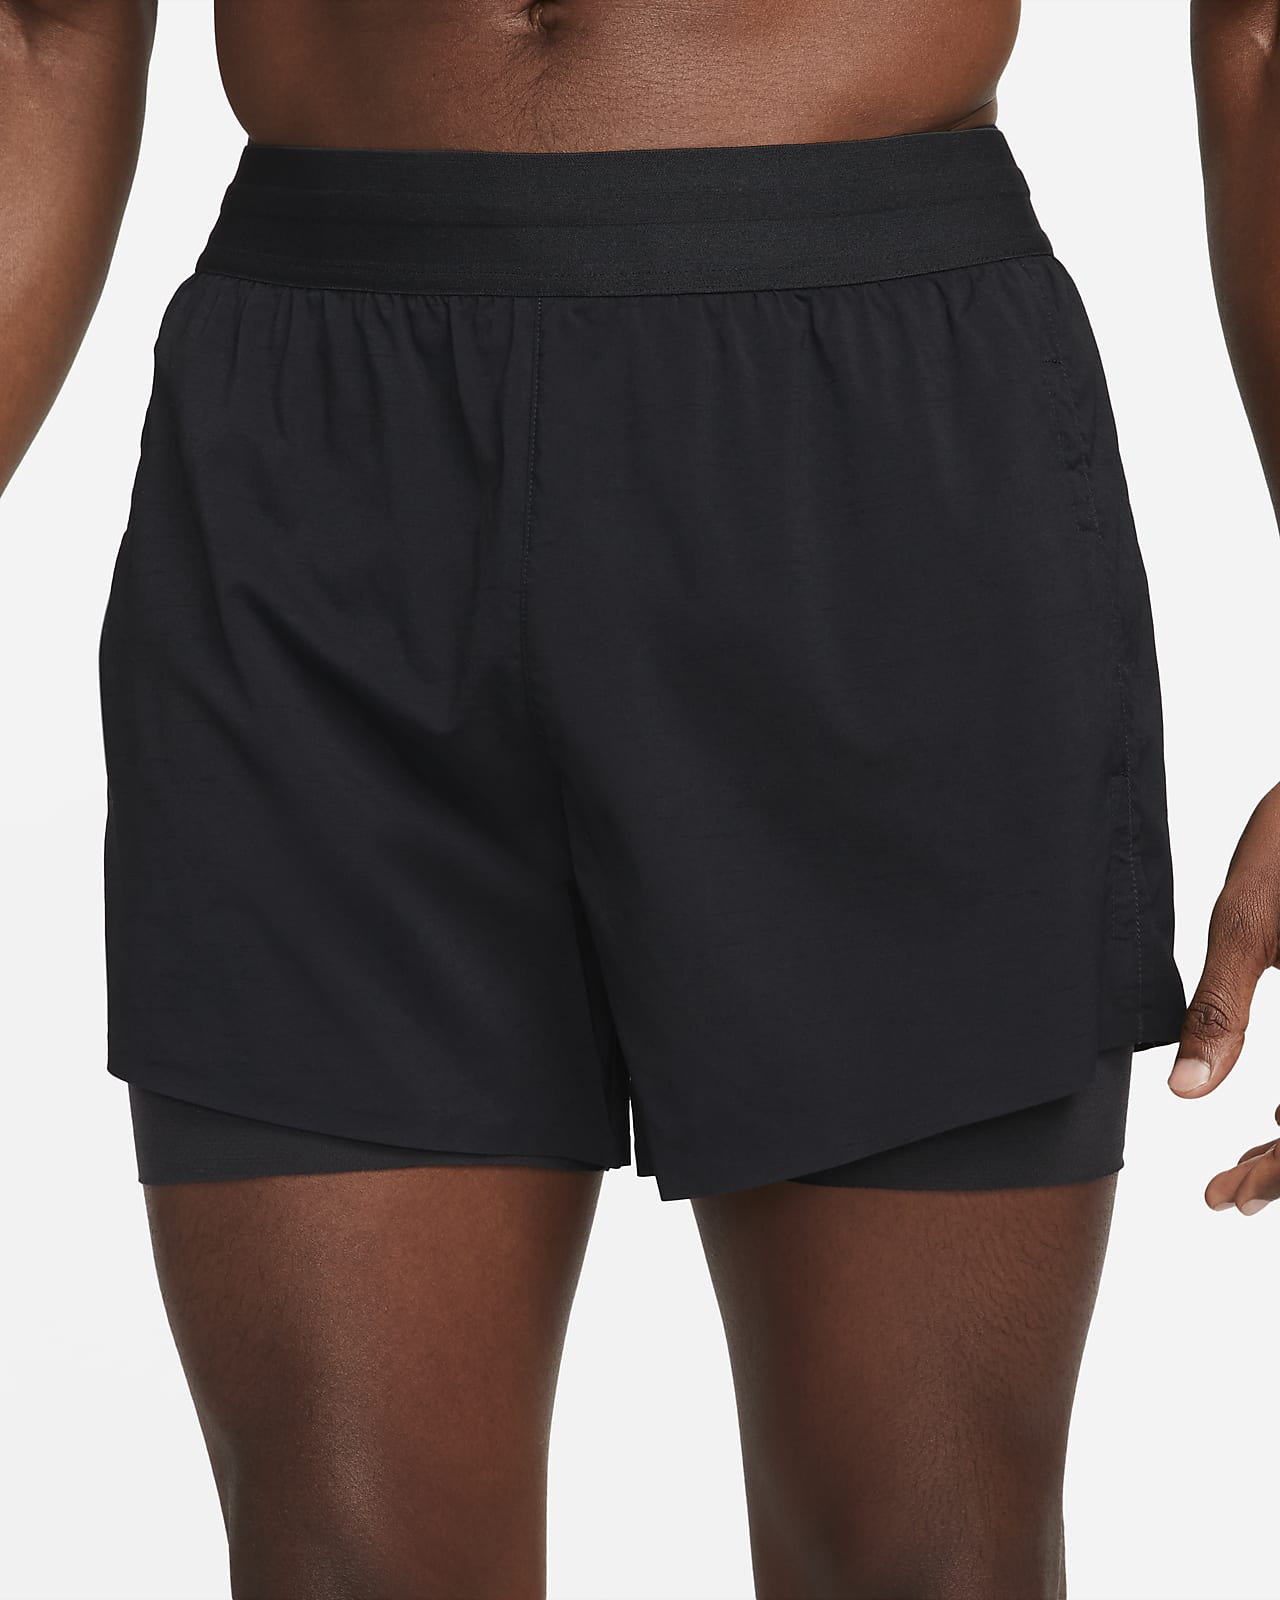 Nike Yoga Men's Hot Yoga Shorts. Nike SE